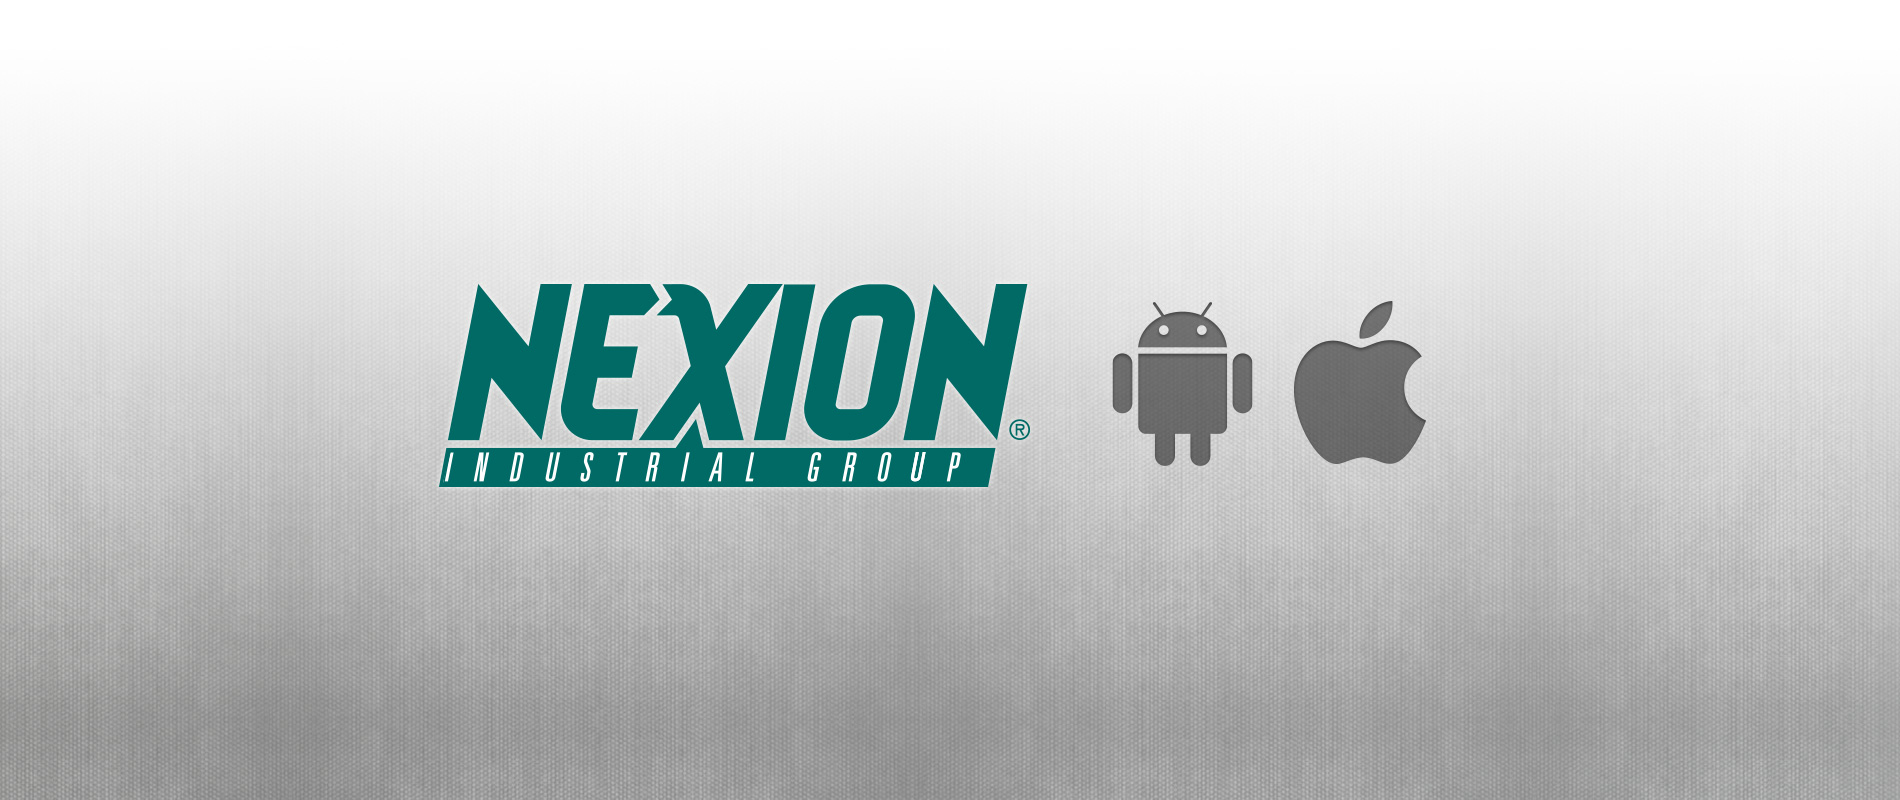 BSD@Software ha rilasciato app Nexion Service